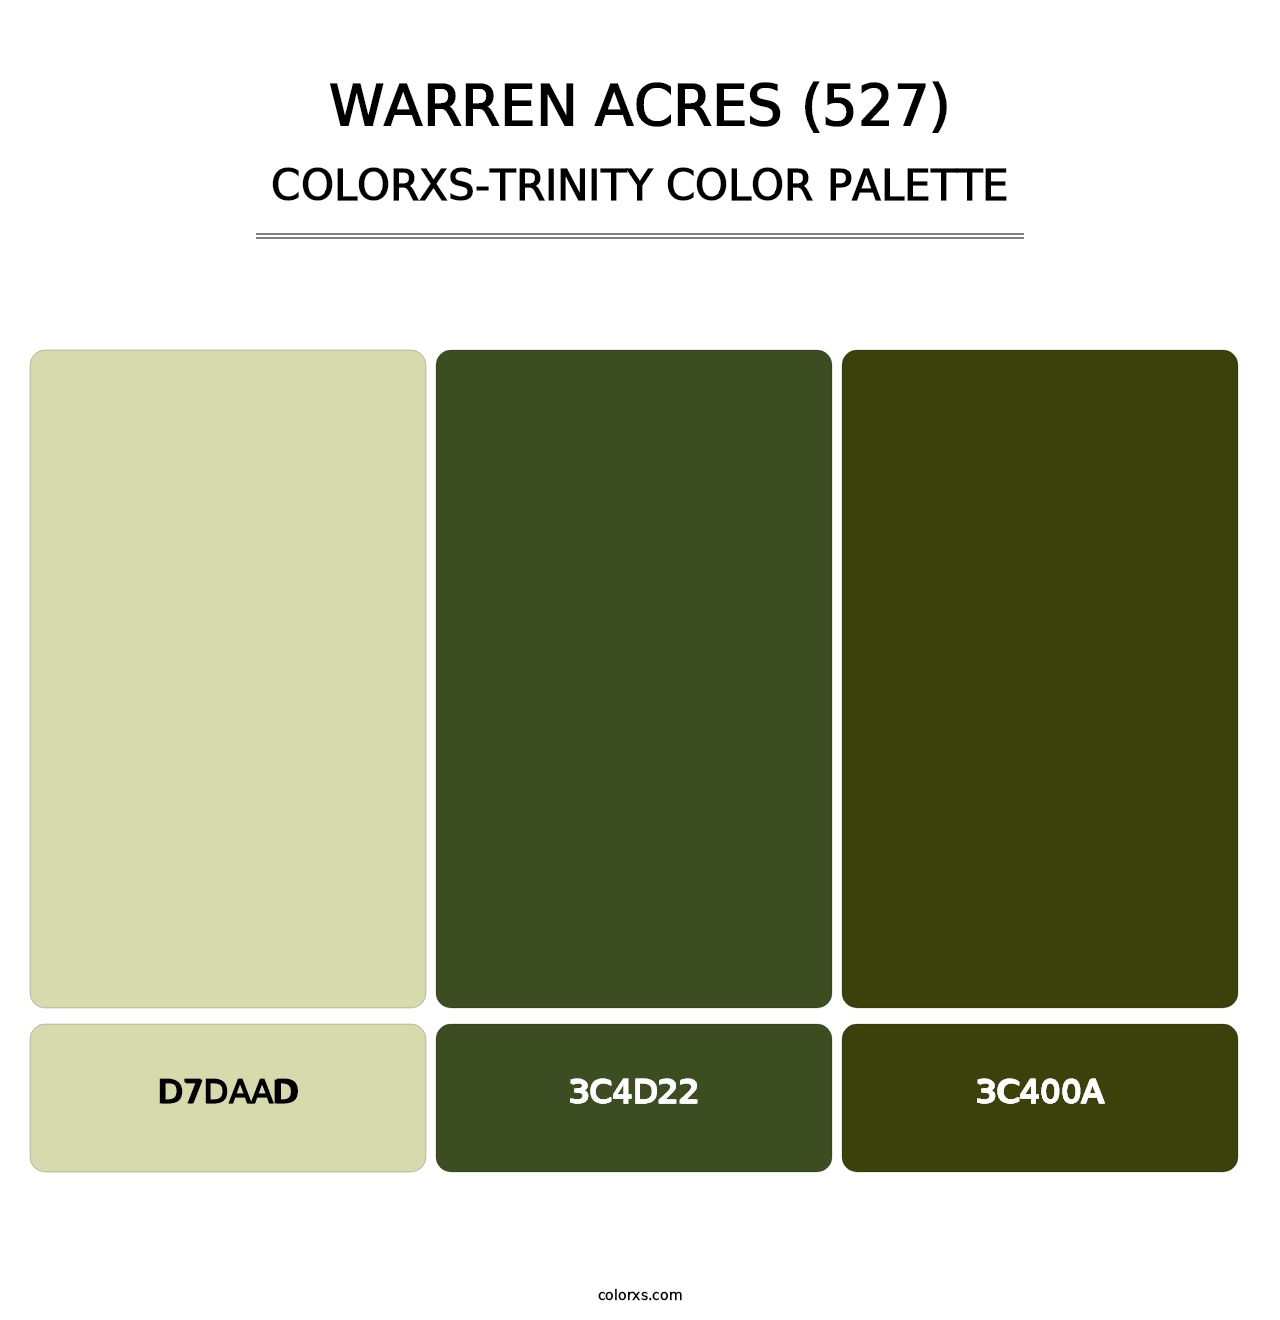 Warren Acres (527) - Colorxs Trinity Palette